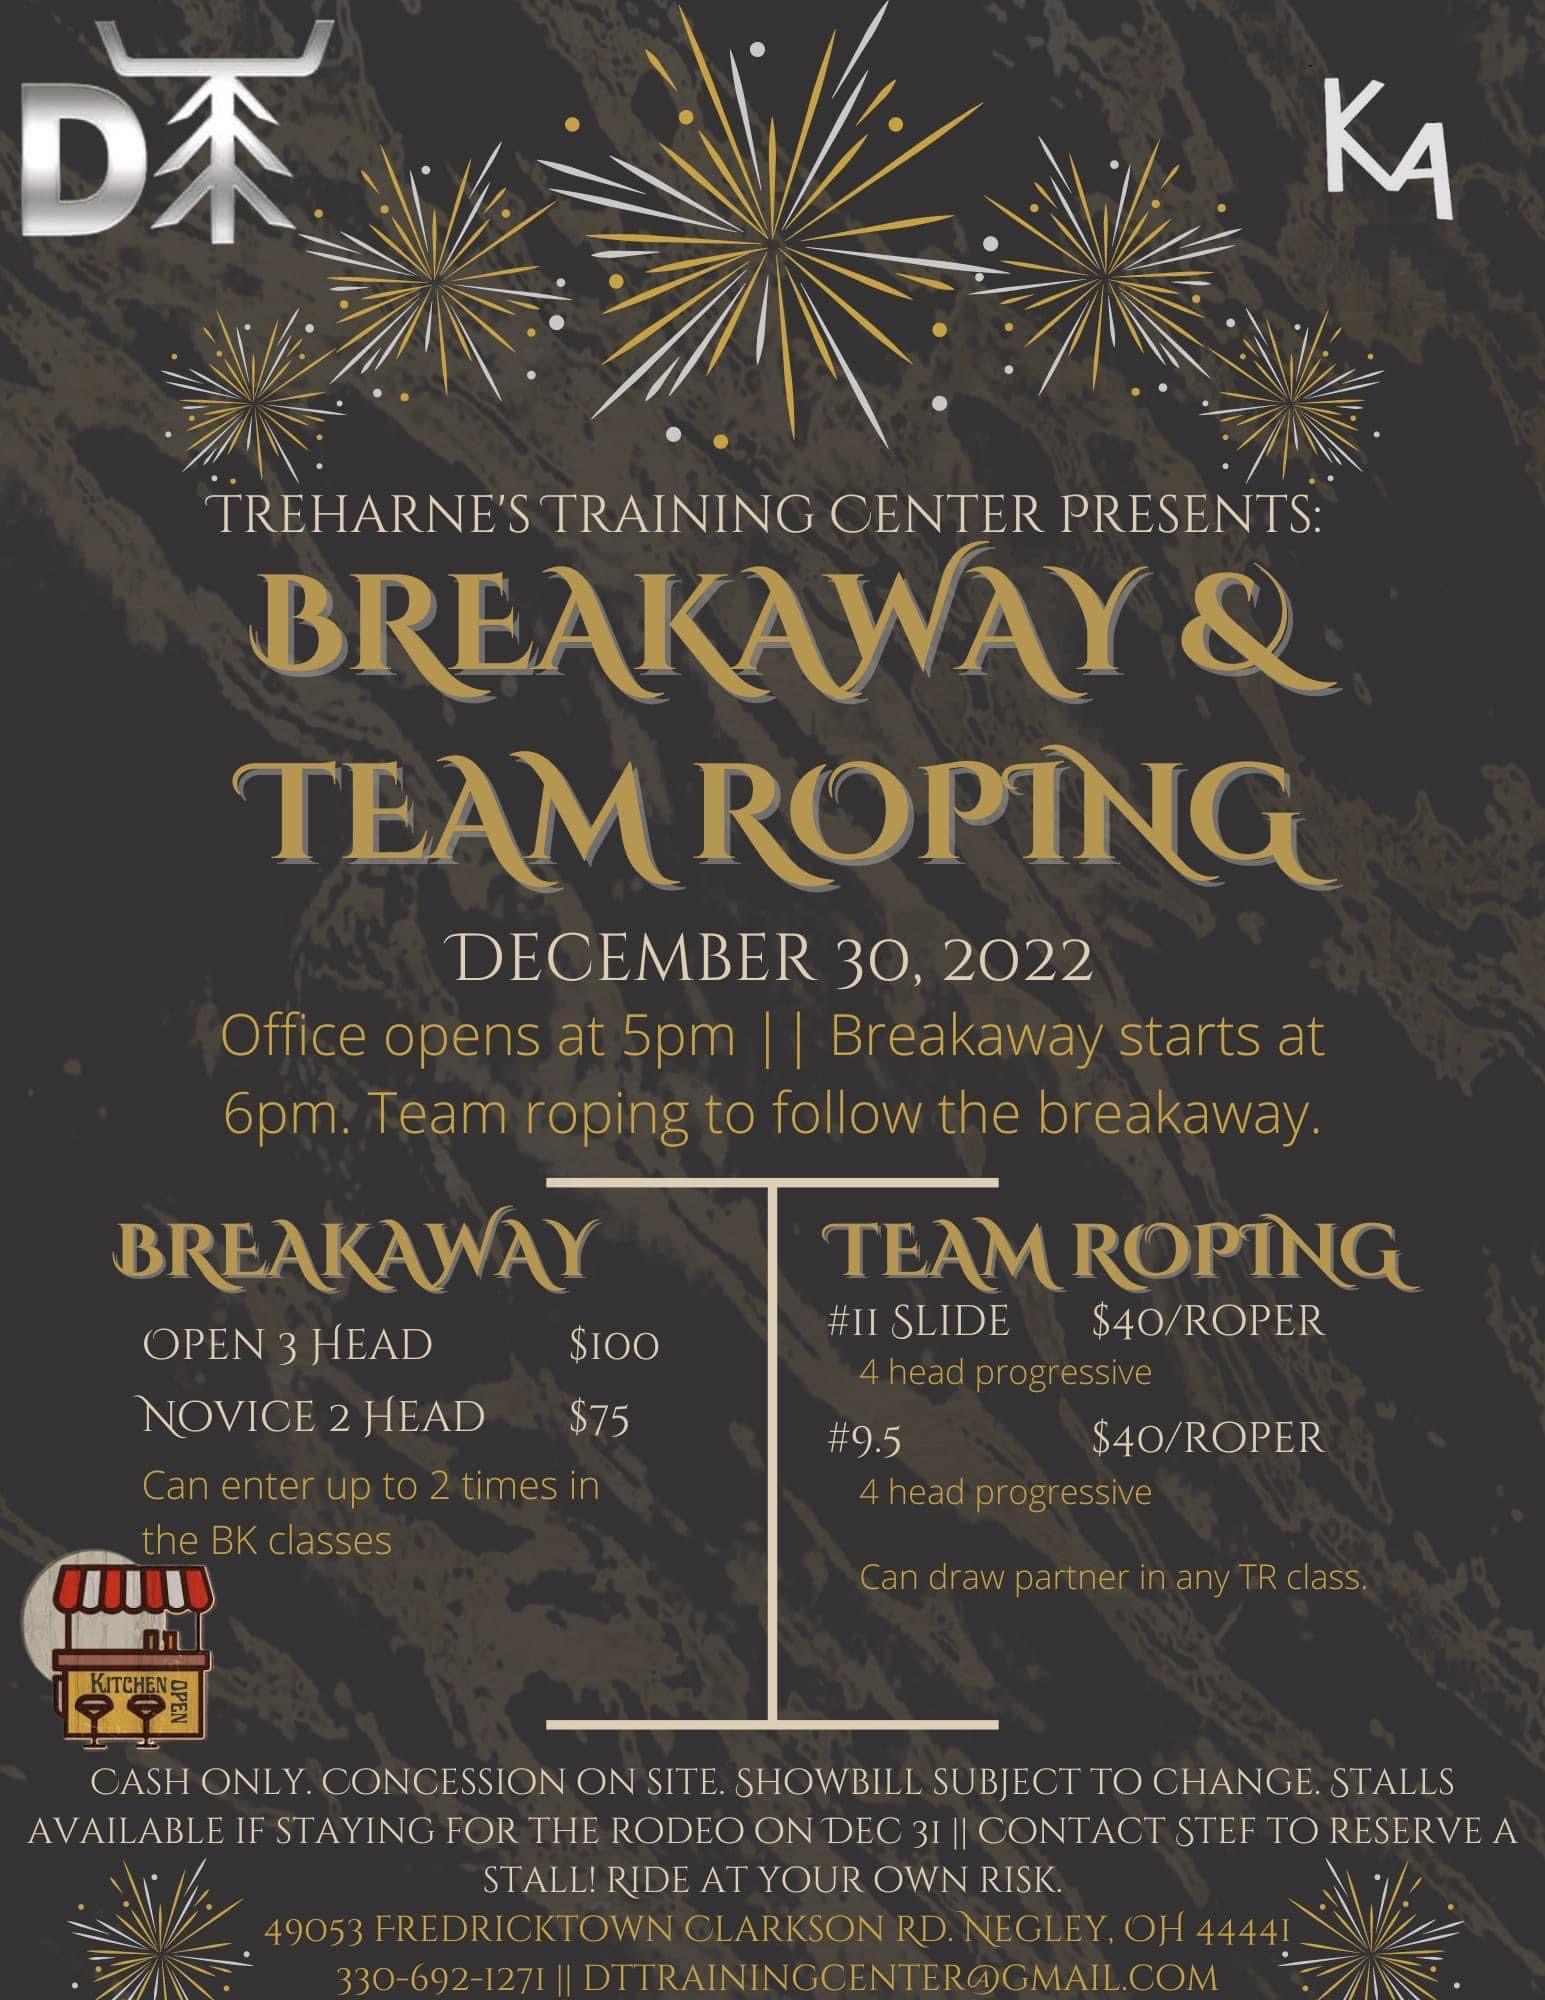 Breakaway & Team Roping